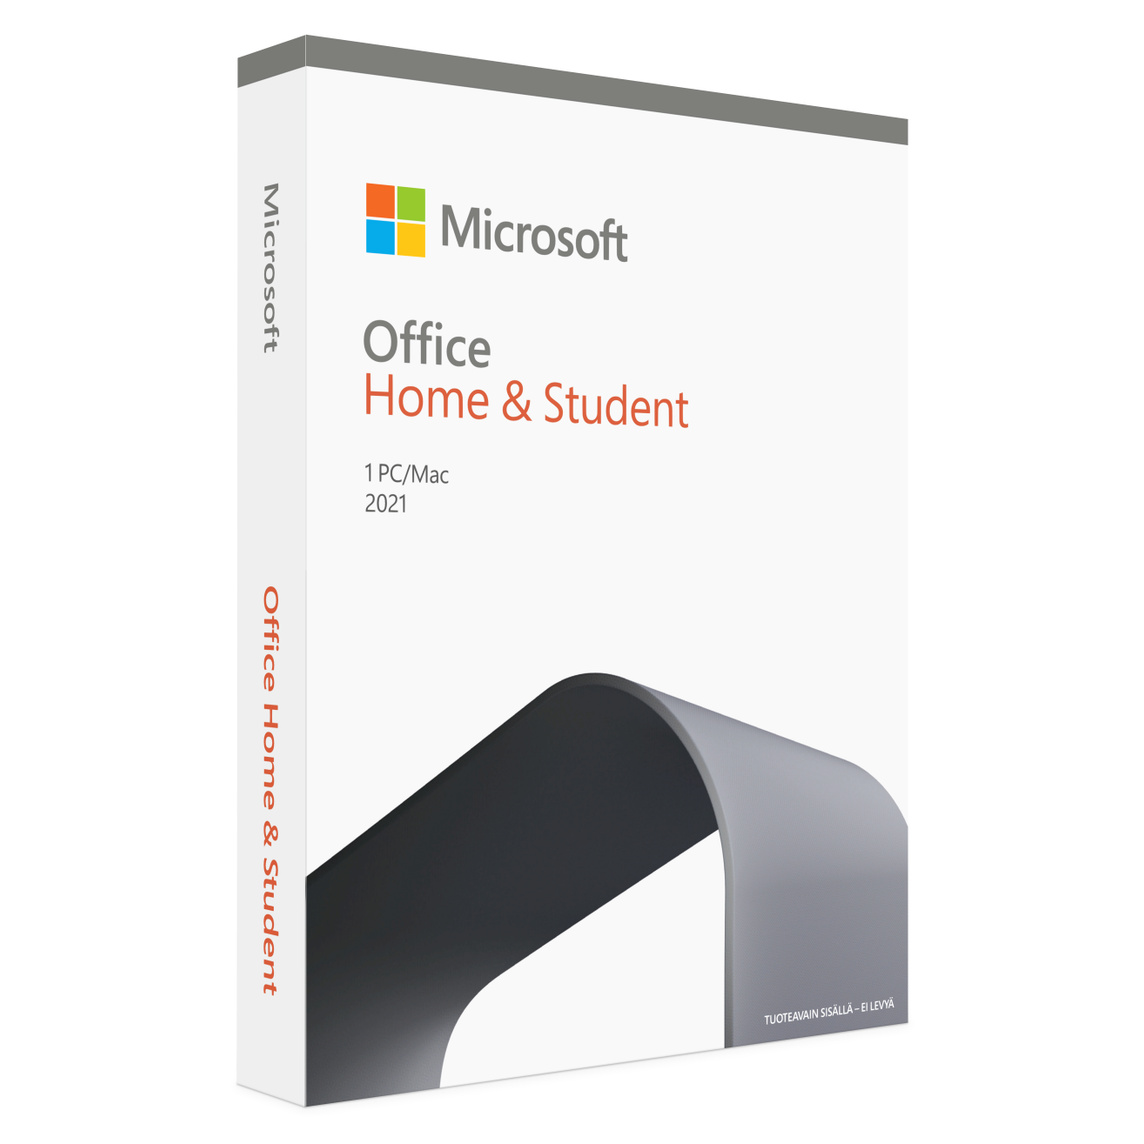 Microsoft Office Home and Student 2021 tarjoaa perinteiset Office-apit ja sähköpostin perheille ja opiskelijoille, jotka käyttävät yhtä Macia.